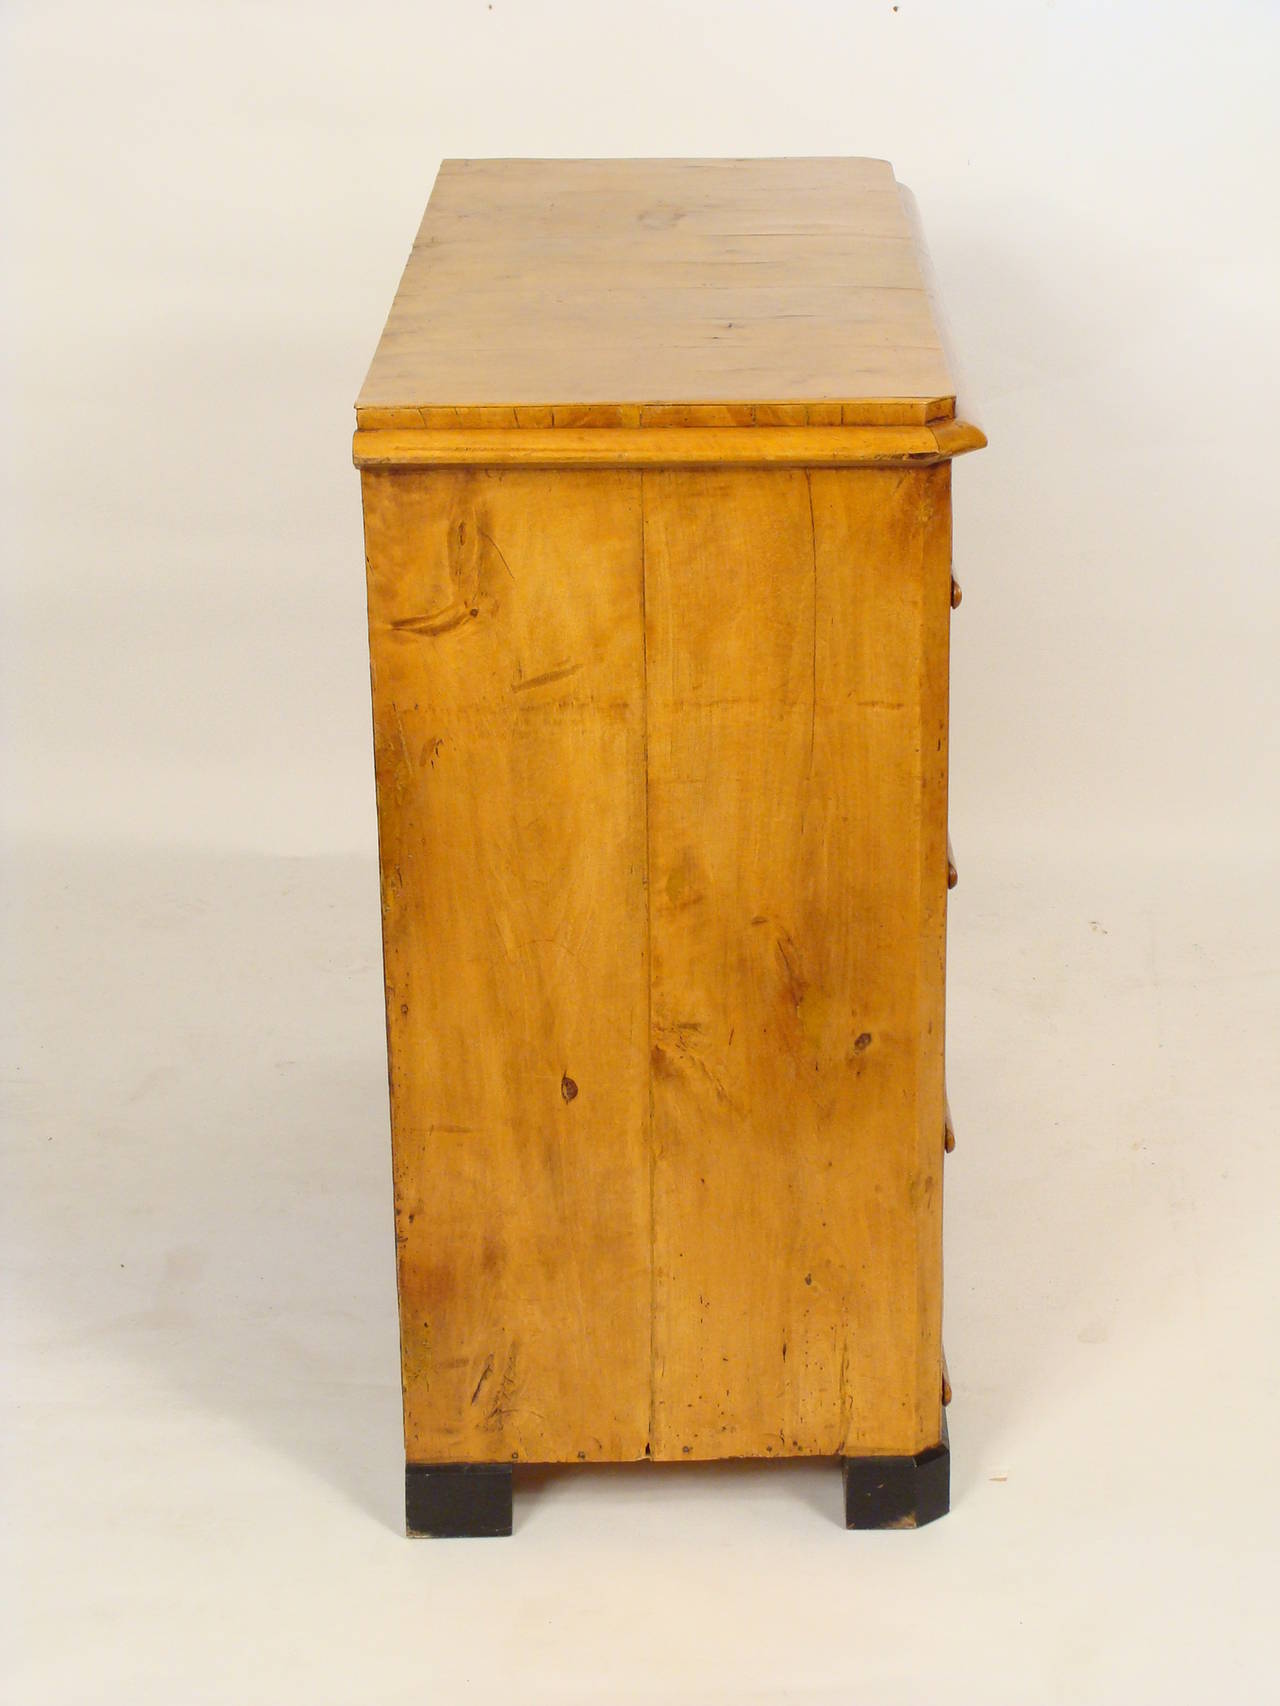 Biedermeier birch chest of drawers with bone escutcheons and ebonized feet, circa 1840.